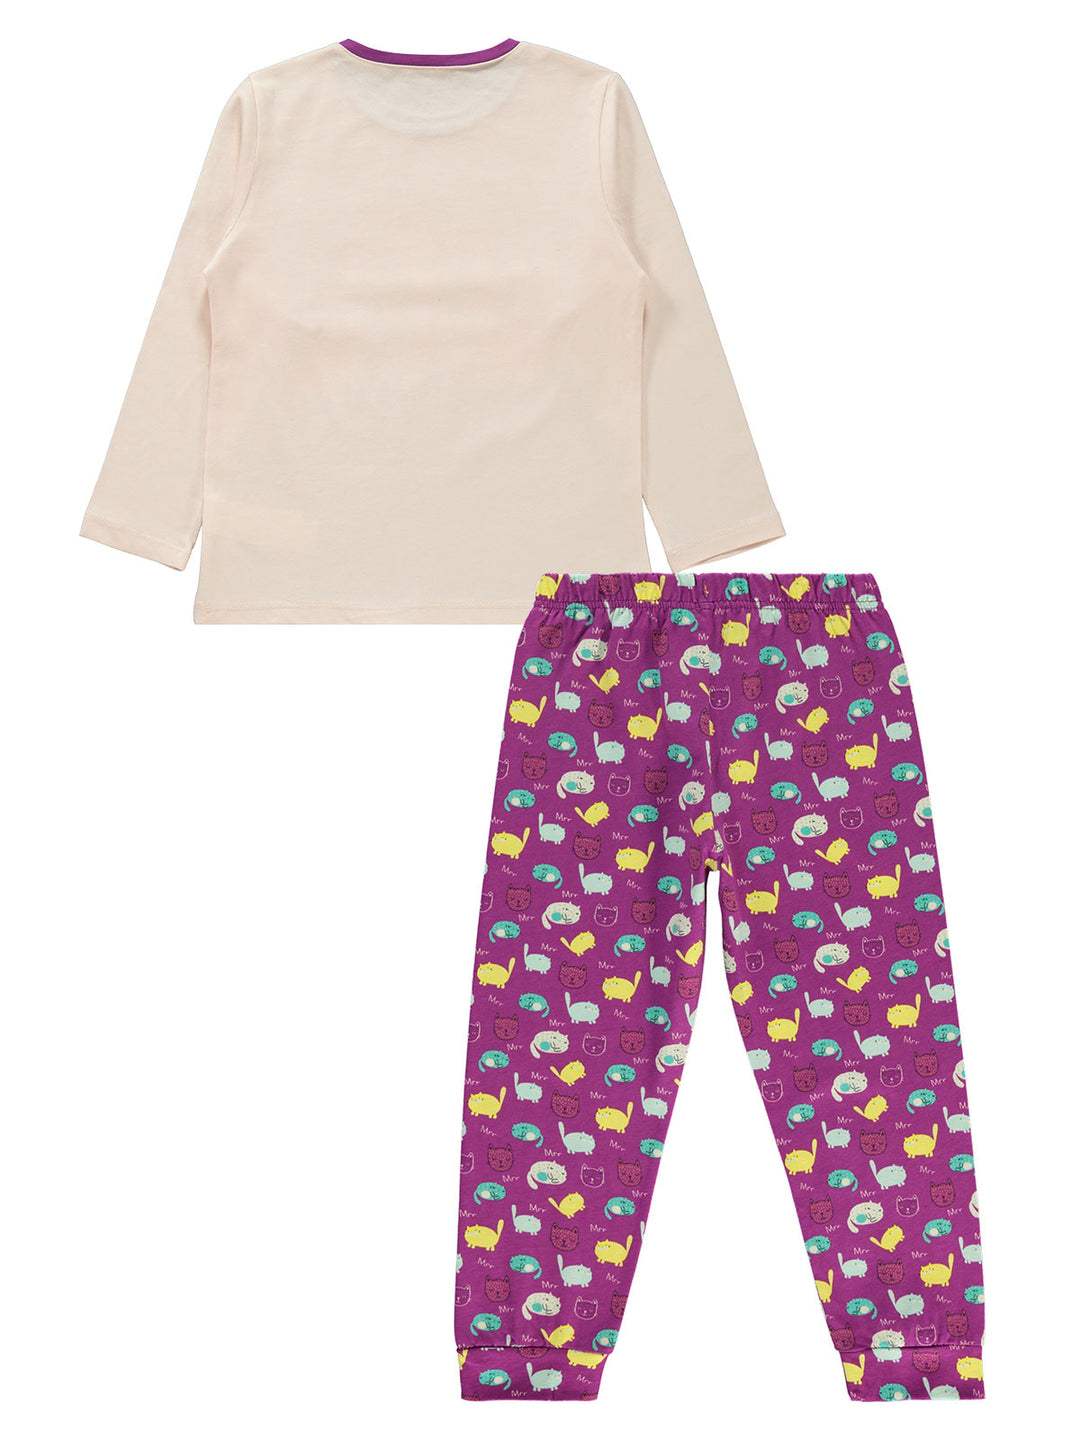 Civil Girls Pajama Suit Cotton L/S 2Pcs #0842 (W-22)